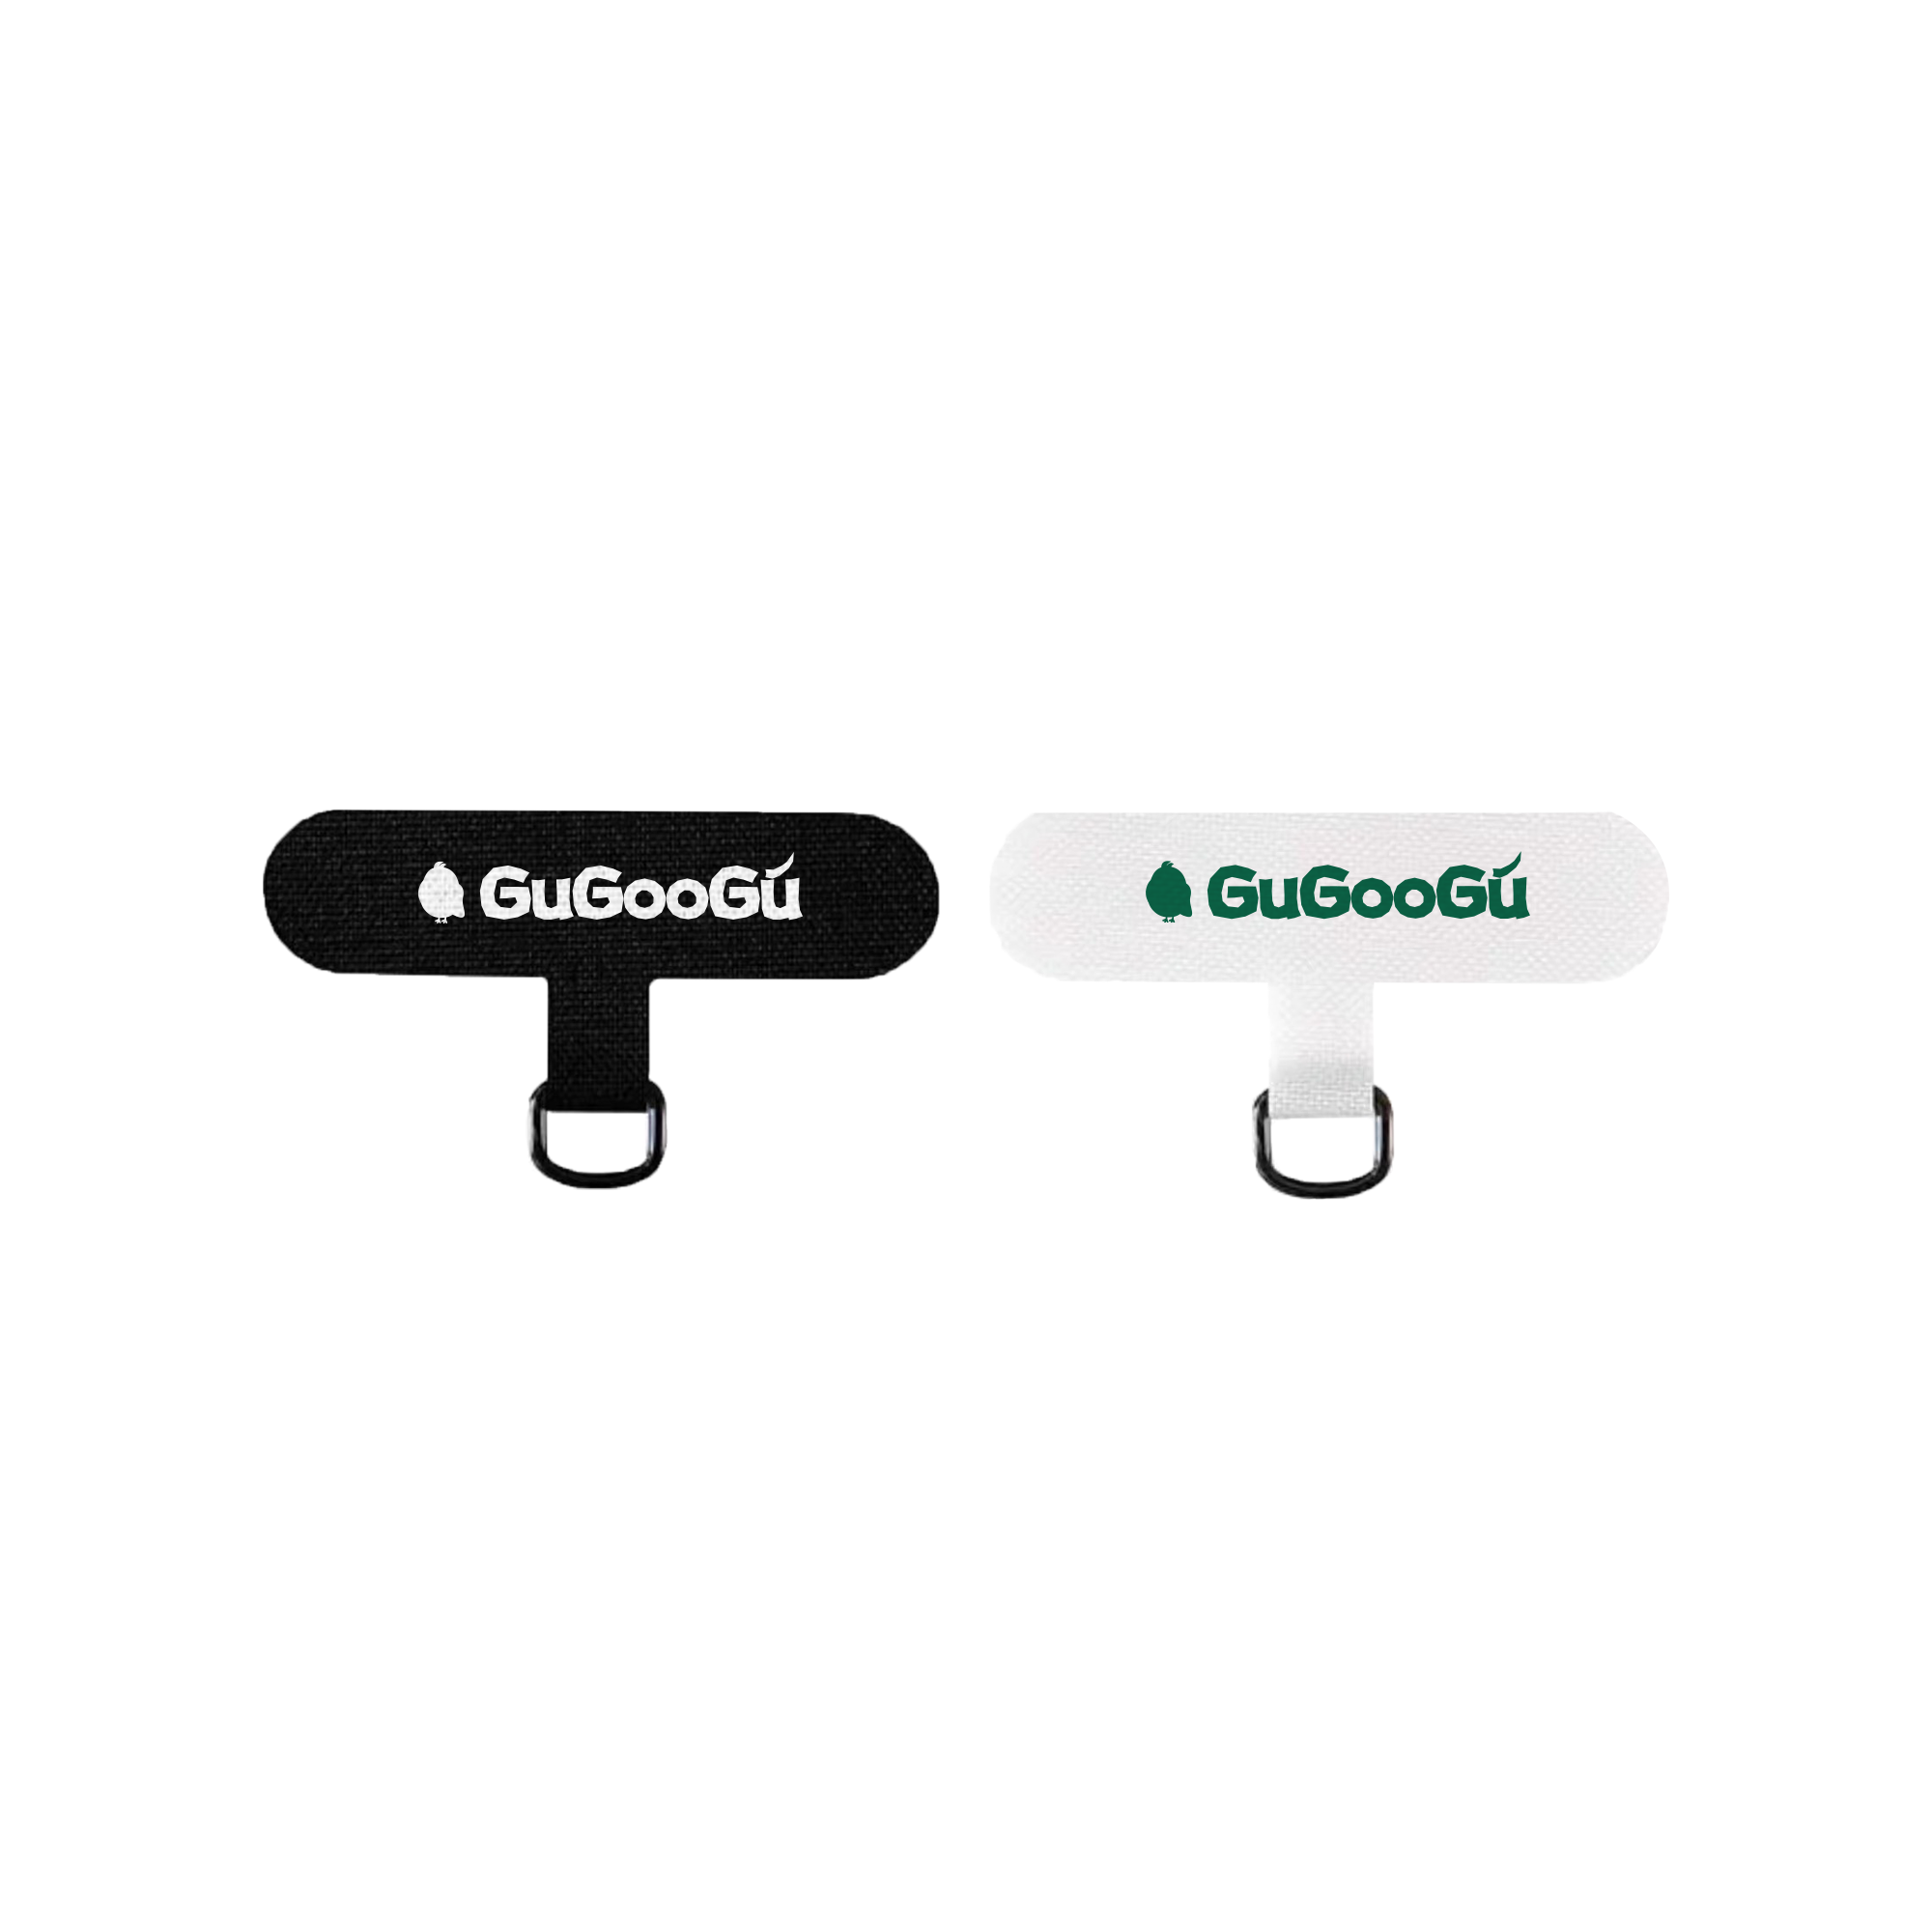 這是GUGOOGU的兩款手機殼夾片：黑色和白色。它們可以放在手機殼跟手機中間，使用手機繩將手機背在身上。